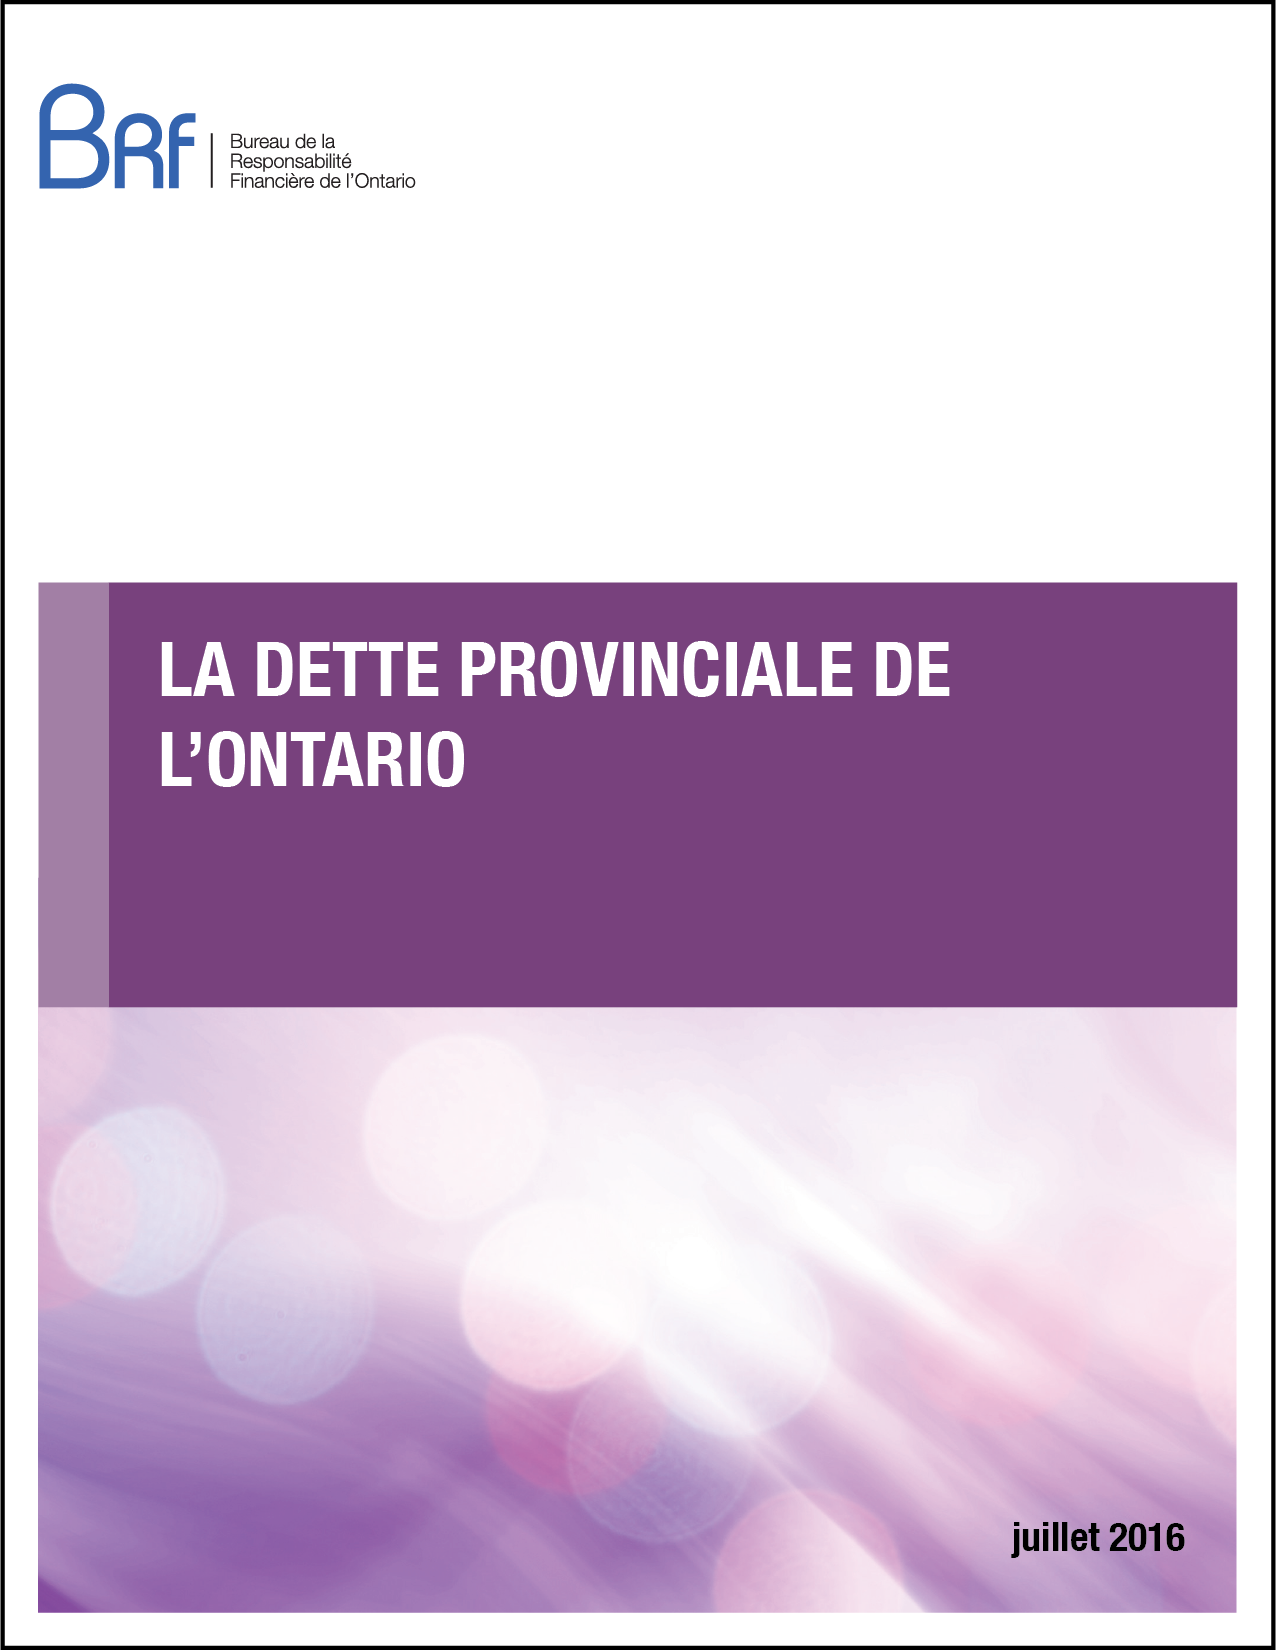 La dette provinciale de l’Ontario